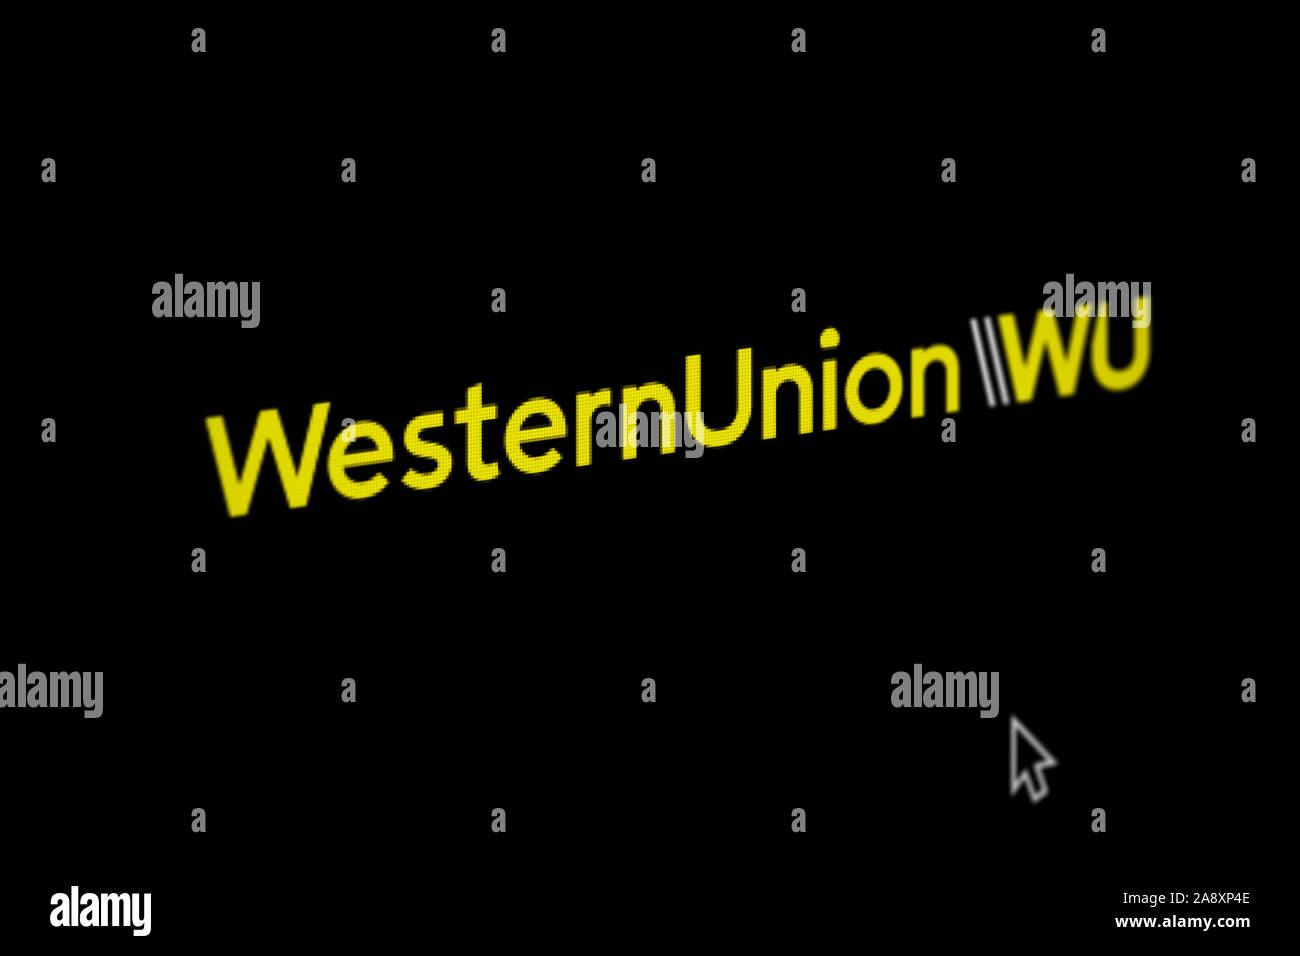 Logo der öffentlichen Unternehmen Western Union Co auf einem Bildschirm in  der Nähe angezeigt. Credit: PIXDUCE Stockfotografie - Alamy